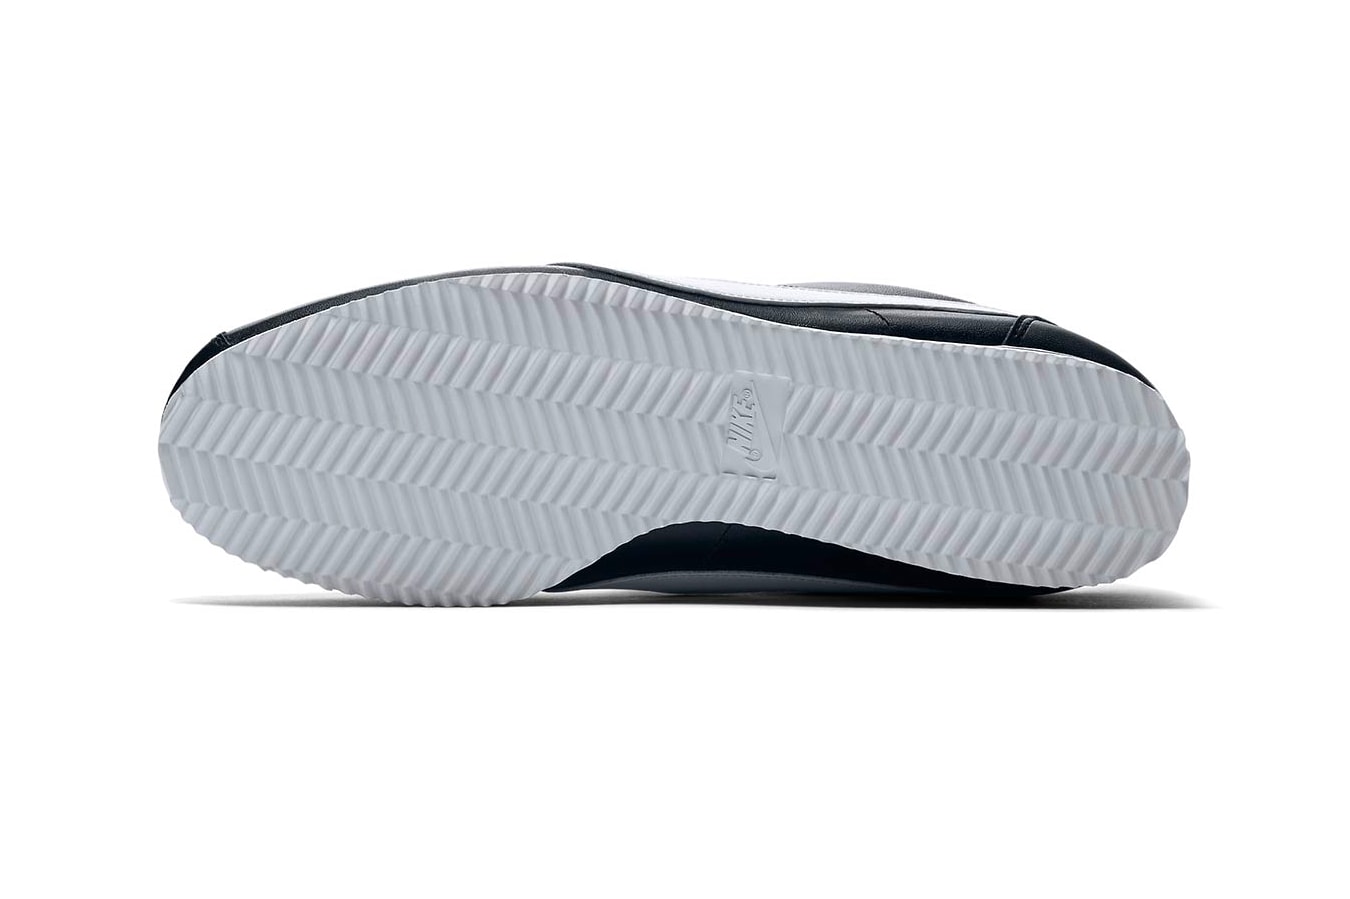 Nike Cortez Premium Black White release info sneakers leather